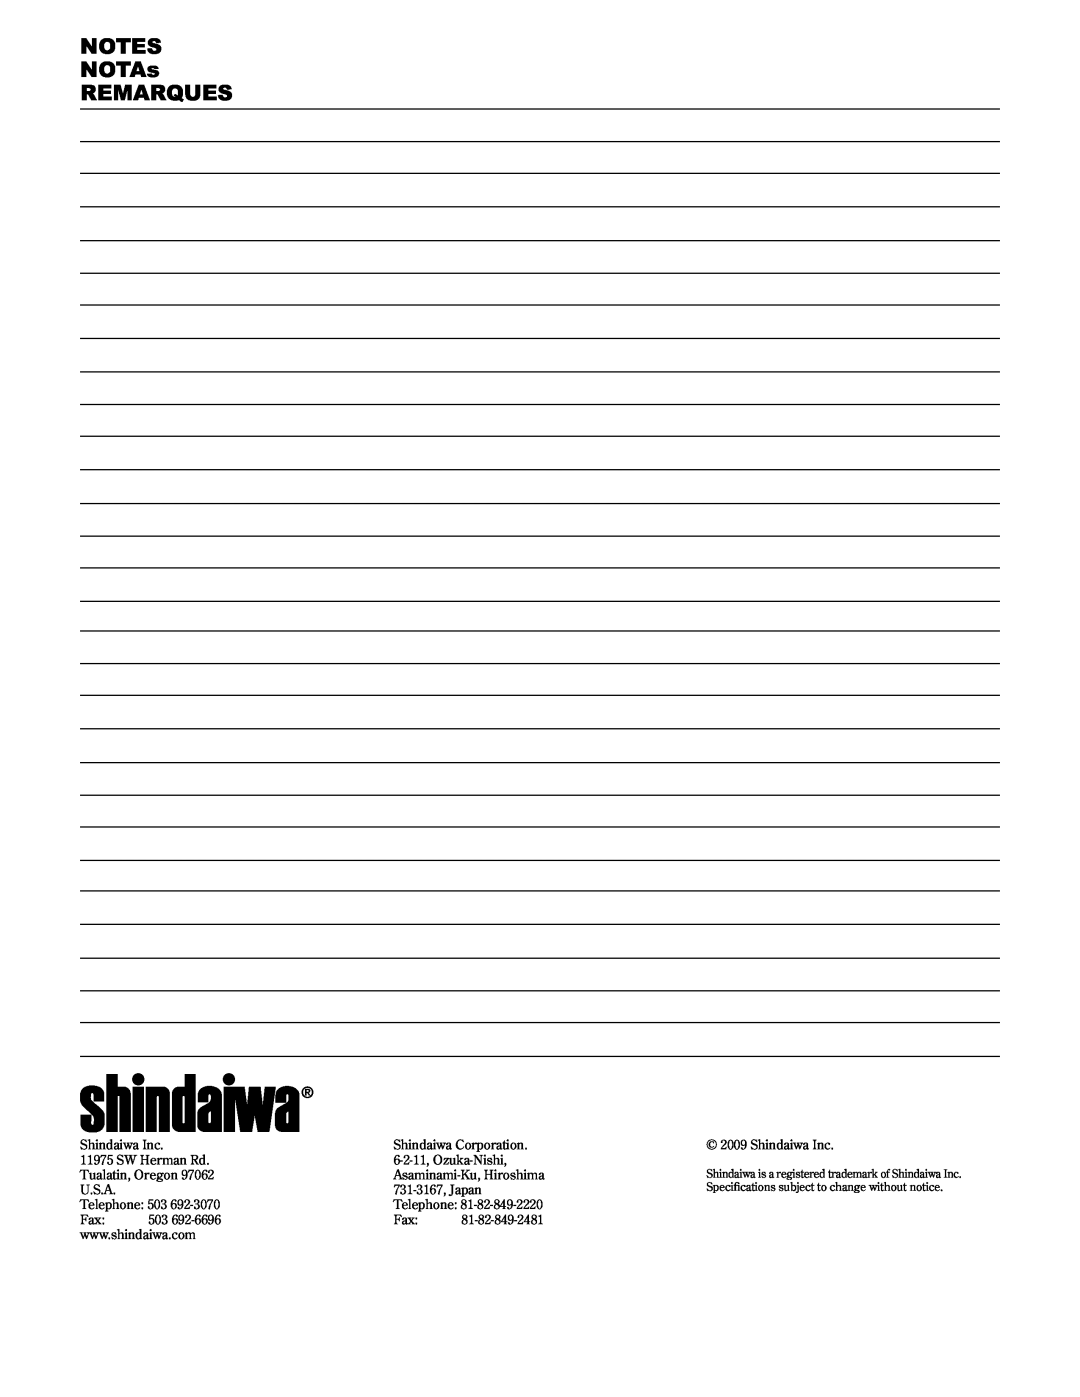 Shindaiwa T2510/EVC, 89300, T2510X/EVC manual NOTES NOTAs REMARQUES 